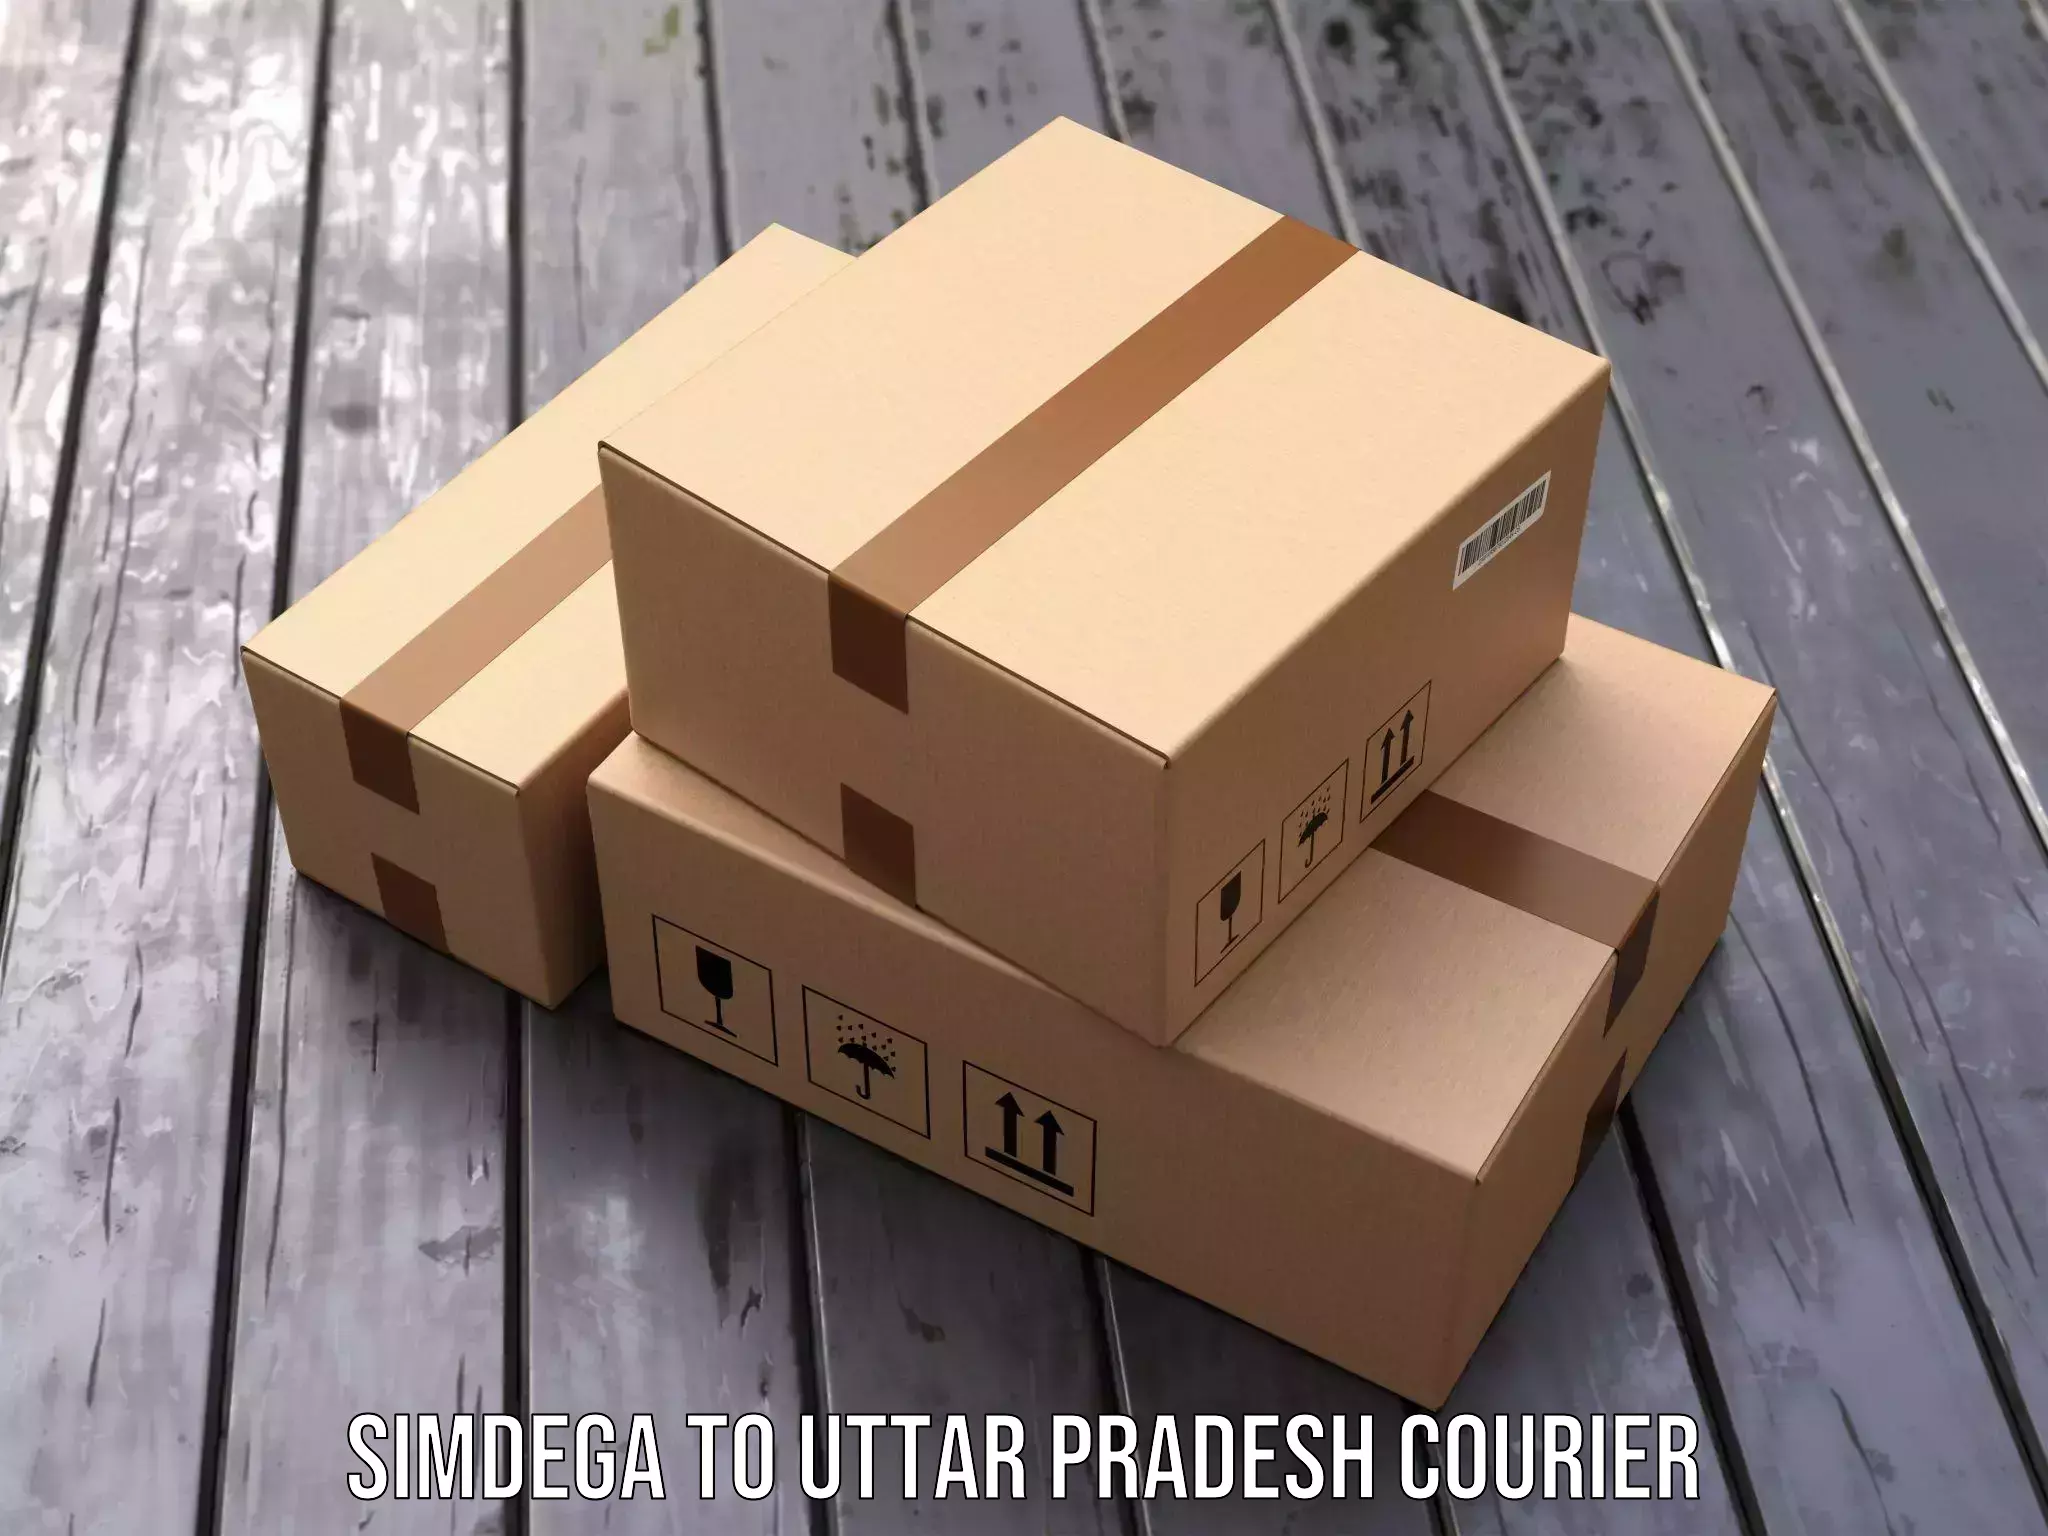 Global shipping solutions Simdega to Uttar Pradesh